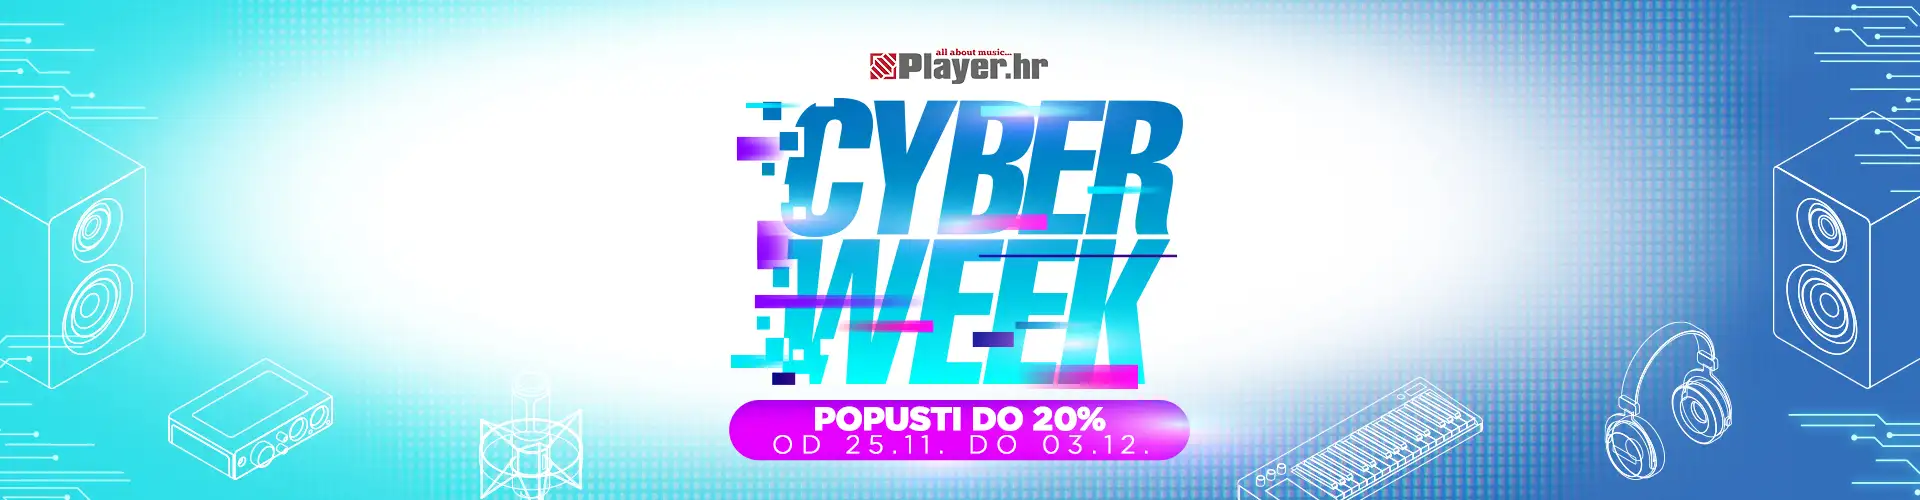 cyber WEEK                                                                                                                                                                                                                                                     